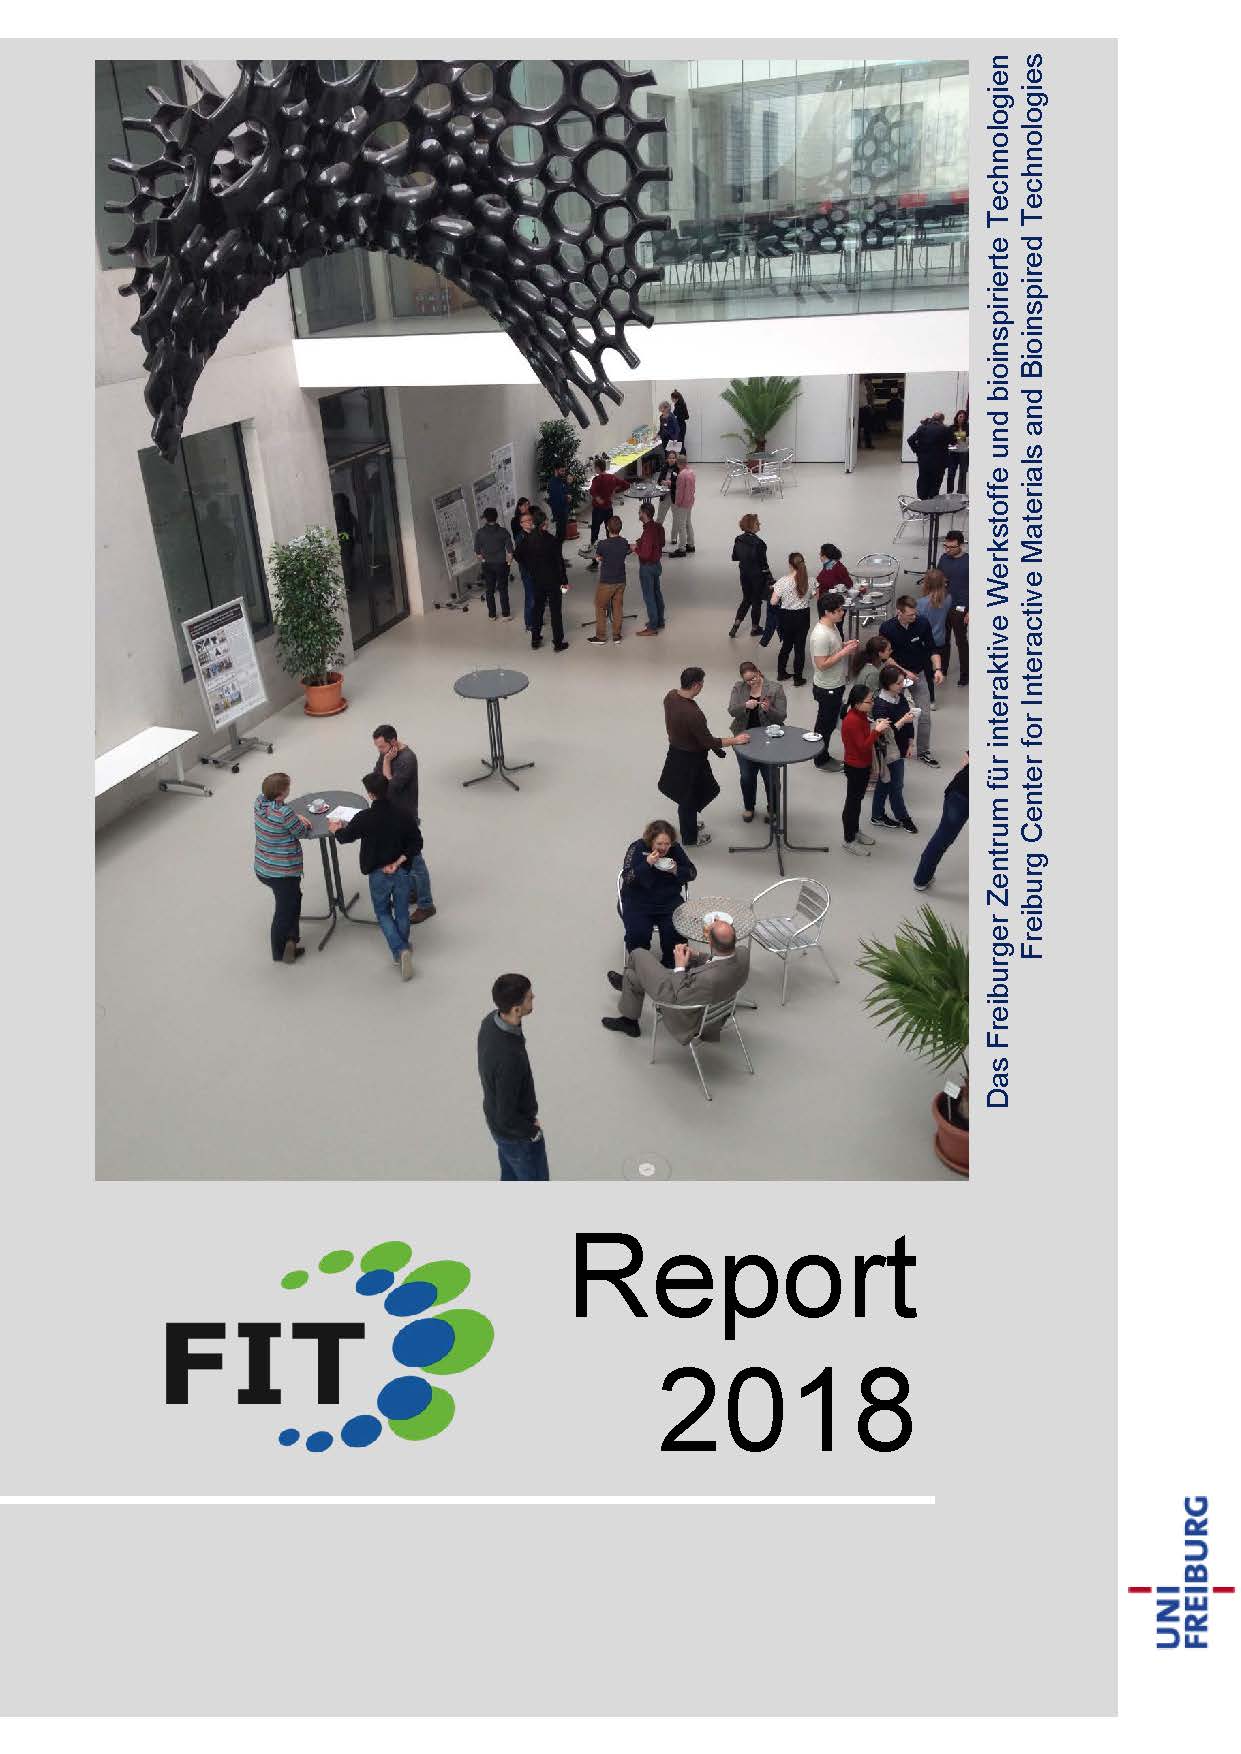 FIT-Report 2018 erschienen